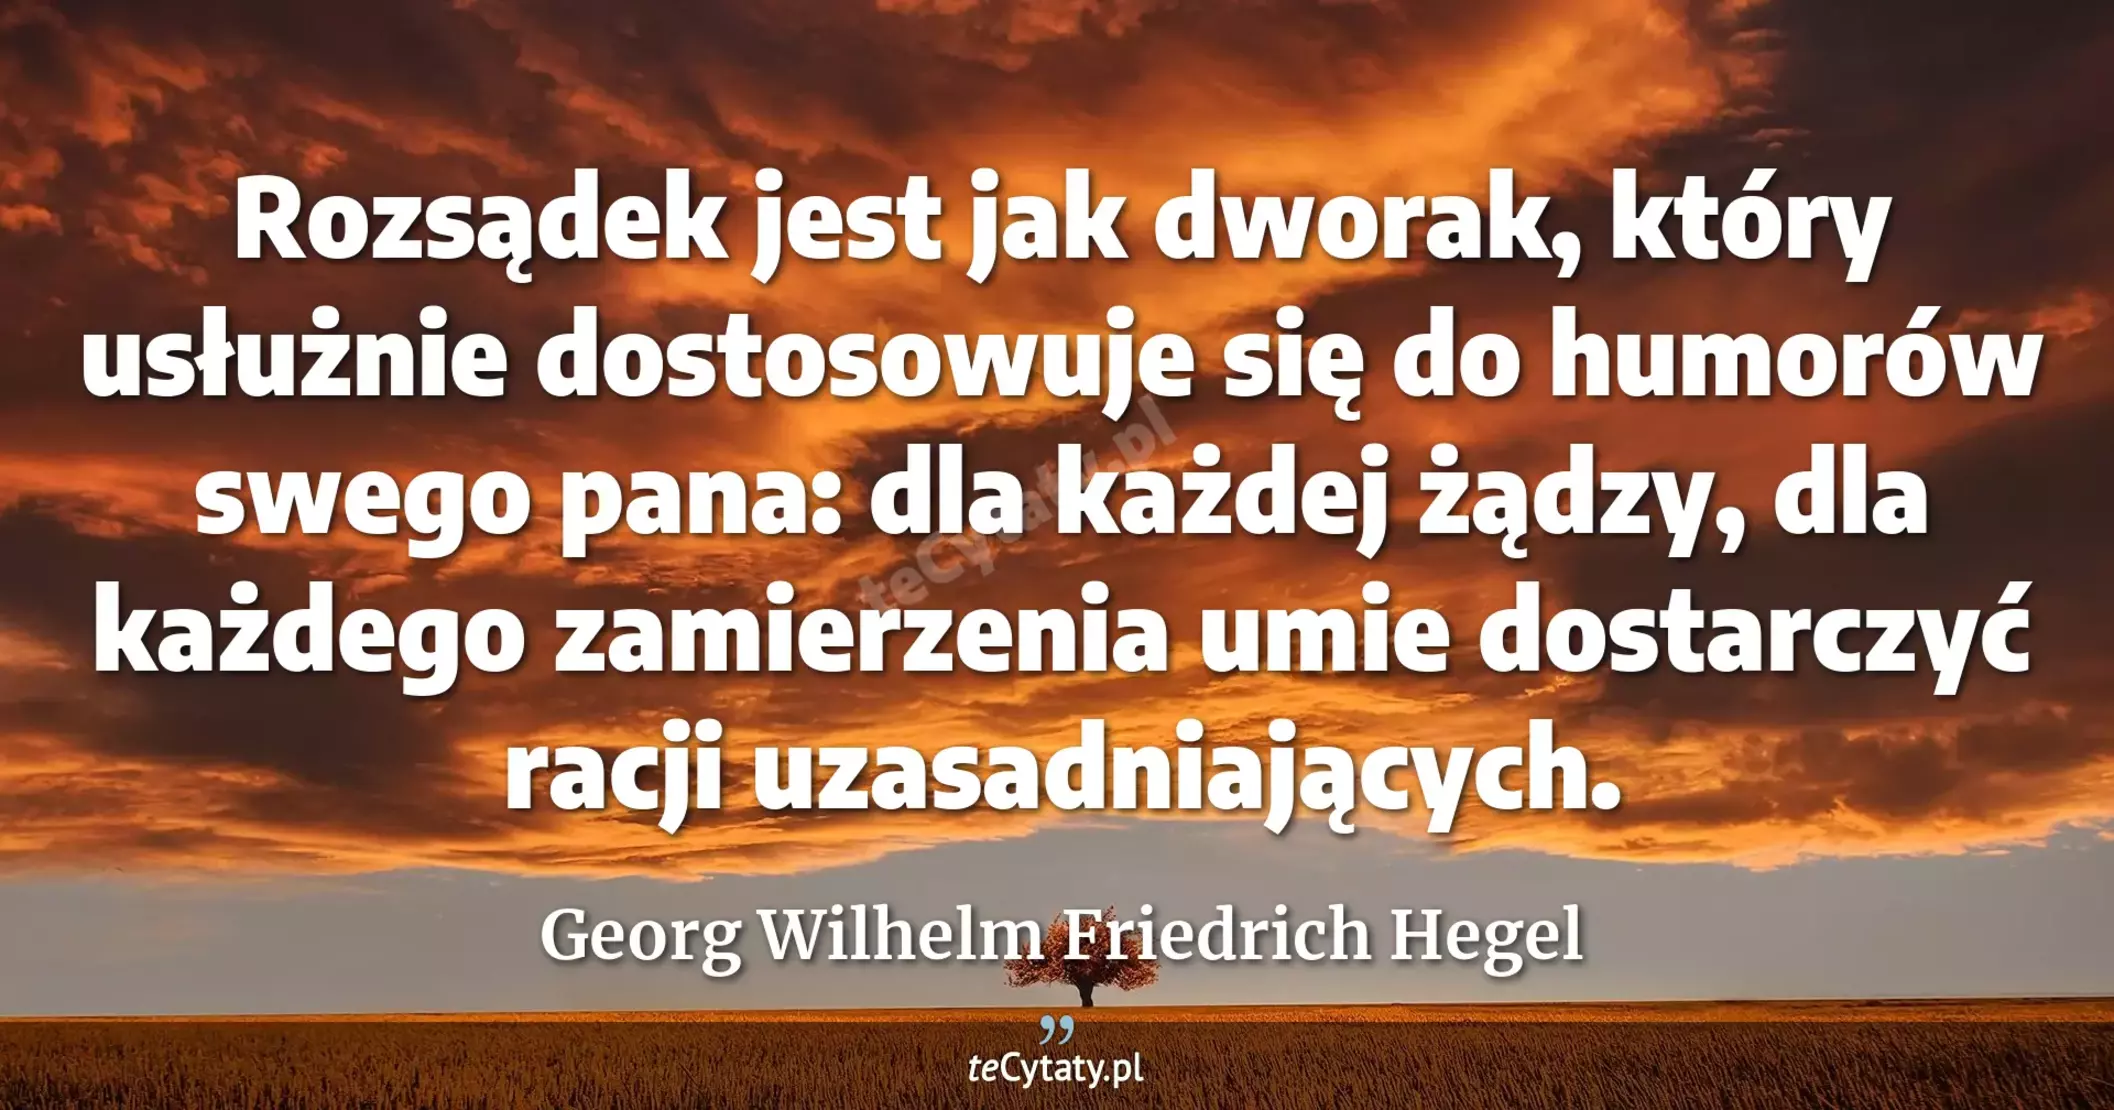 Rozsądek jest jak dworak, który usłużnie dostosowuje się do humorów swego pana: dla każdej żądzy, dla każdego zamierzenia umie dostarczyć racji uzasadniających. - Georg Wilhelm Friedrich Hegel